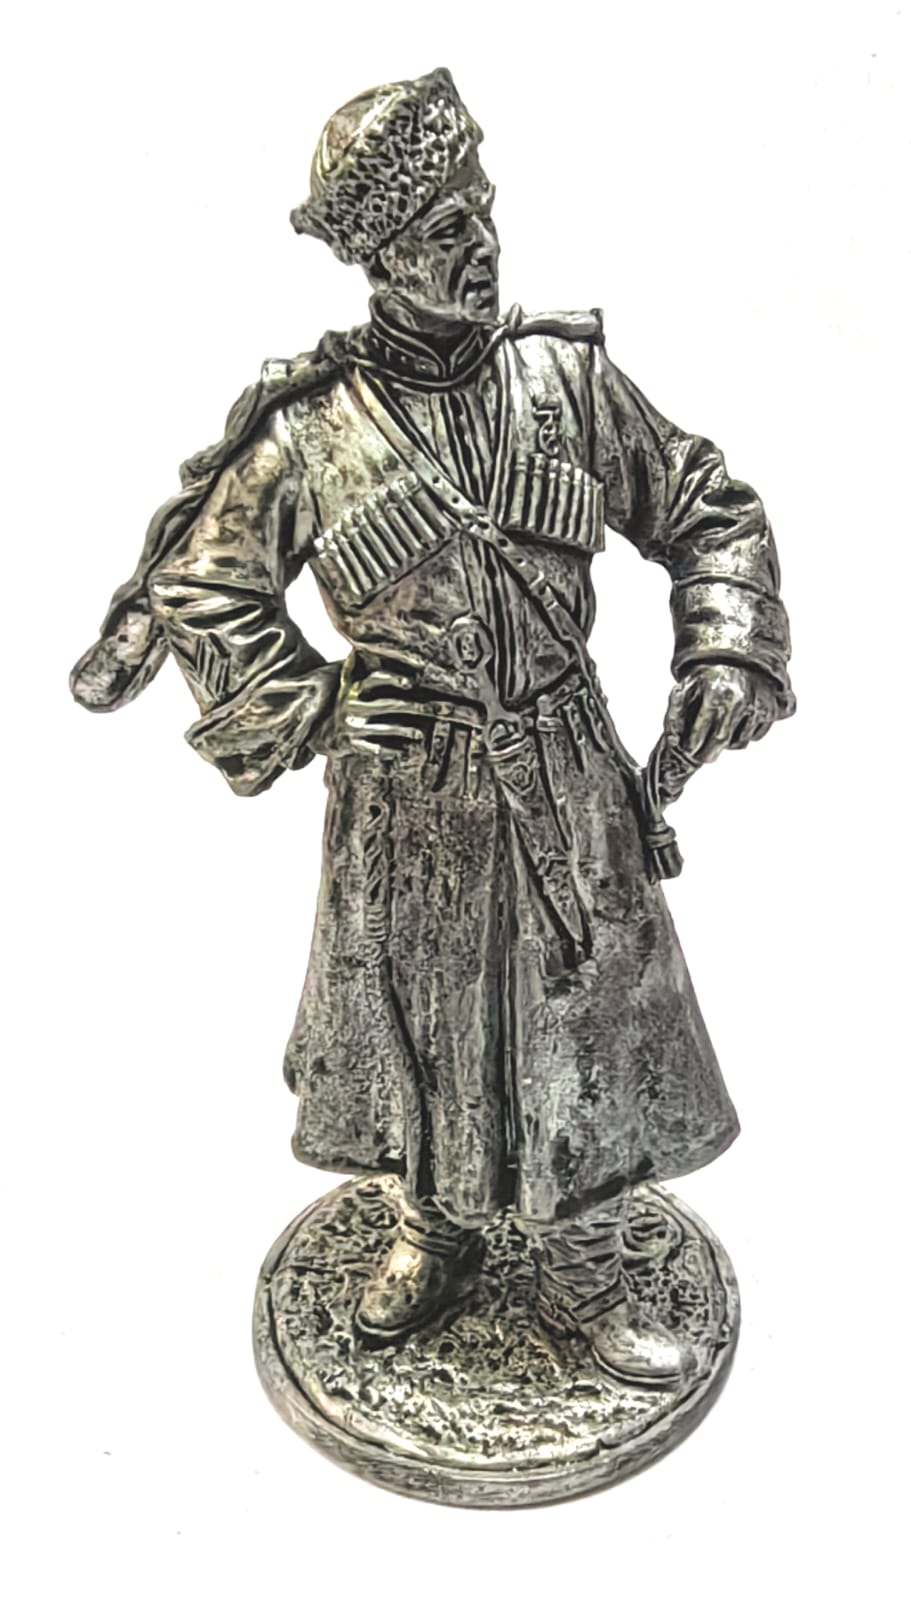 WW2-76  миниатюра  Майор Терских казачьих кавалерийских частей РККА, 1939-43 гг.